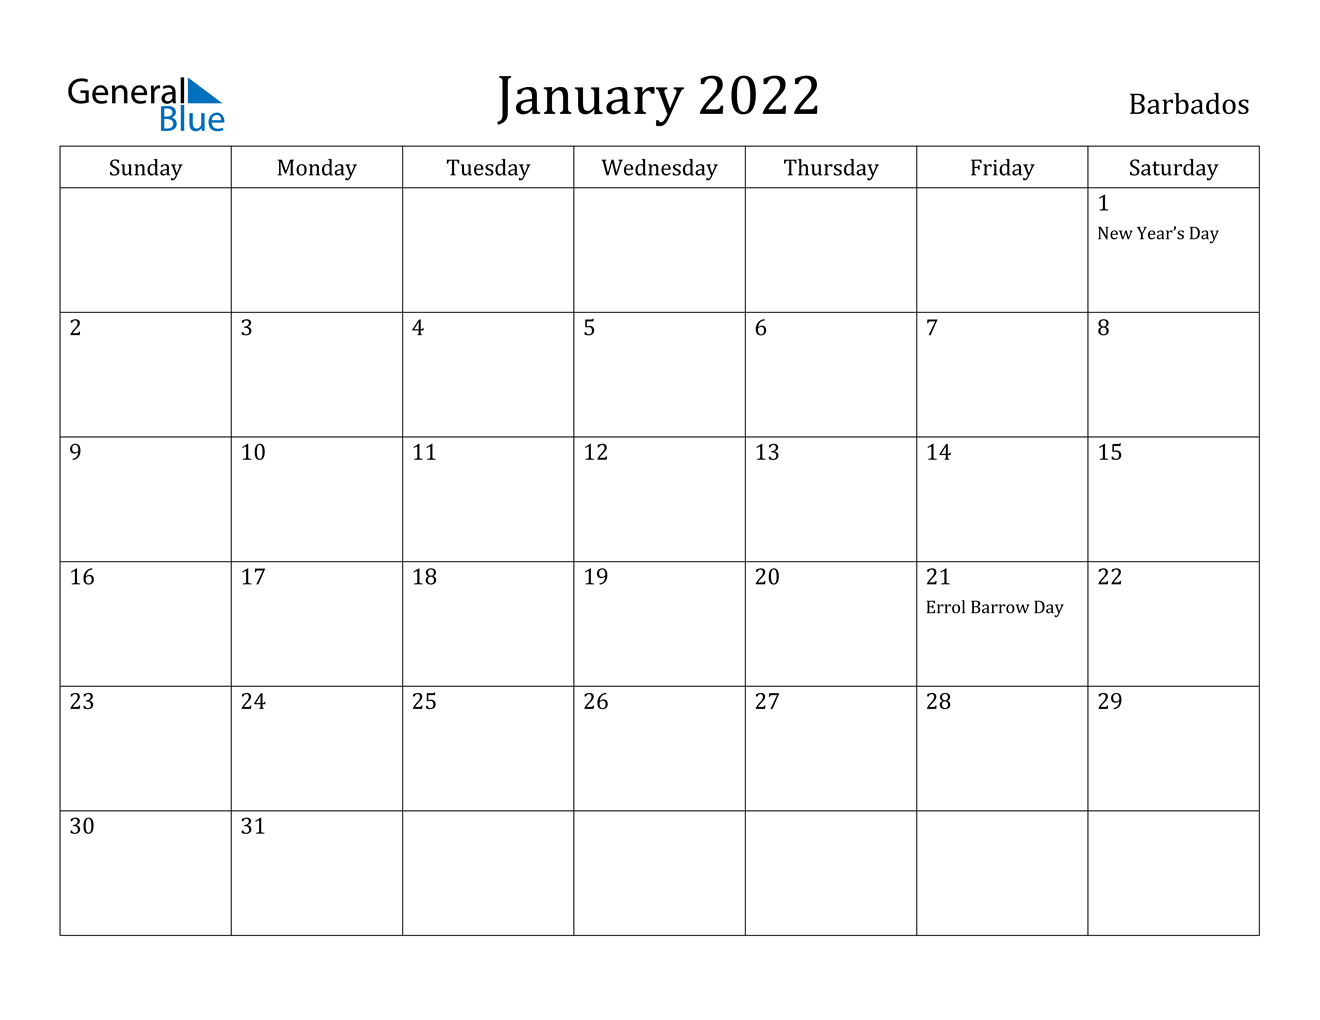 January 2022 Calendar - Barbados  Calendar 2022 Jan To Dec